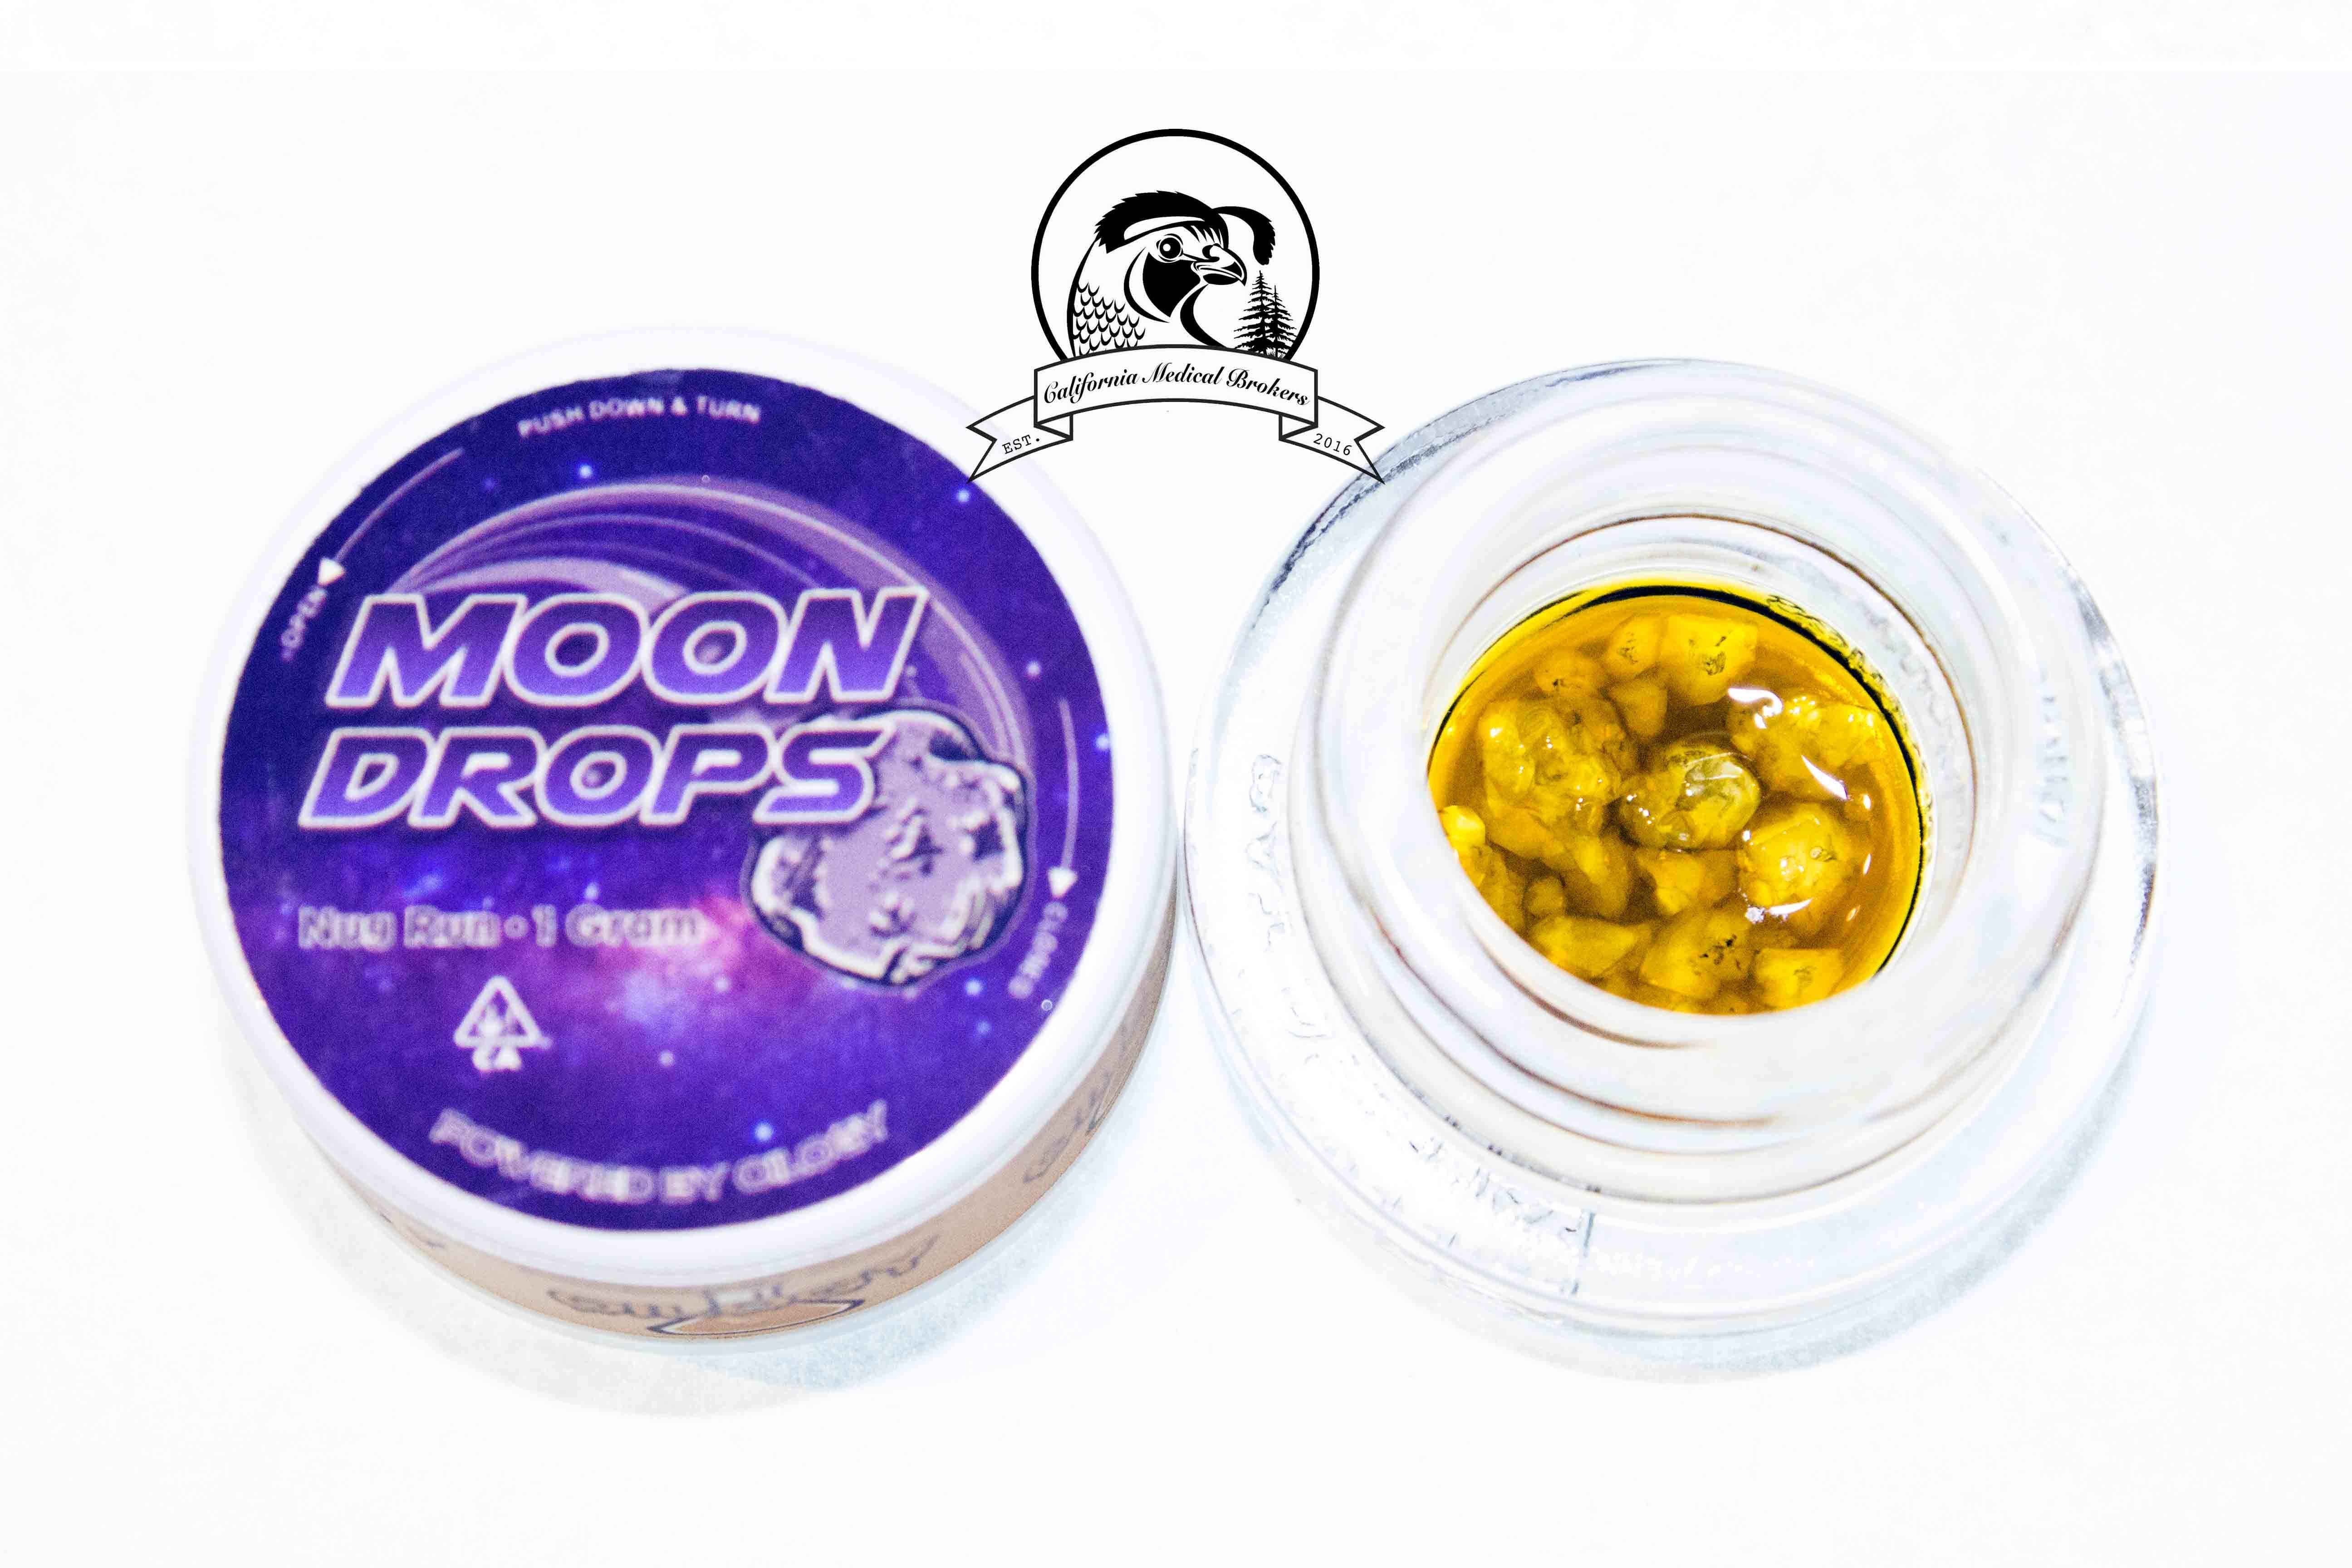 marijuana-dispensaries-call-for-verification-559-903-9071-fresno-oilogy-moon-drop-sauce